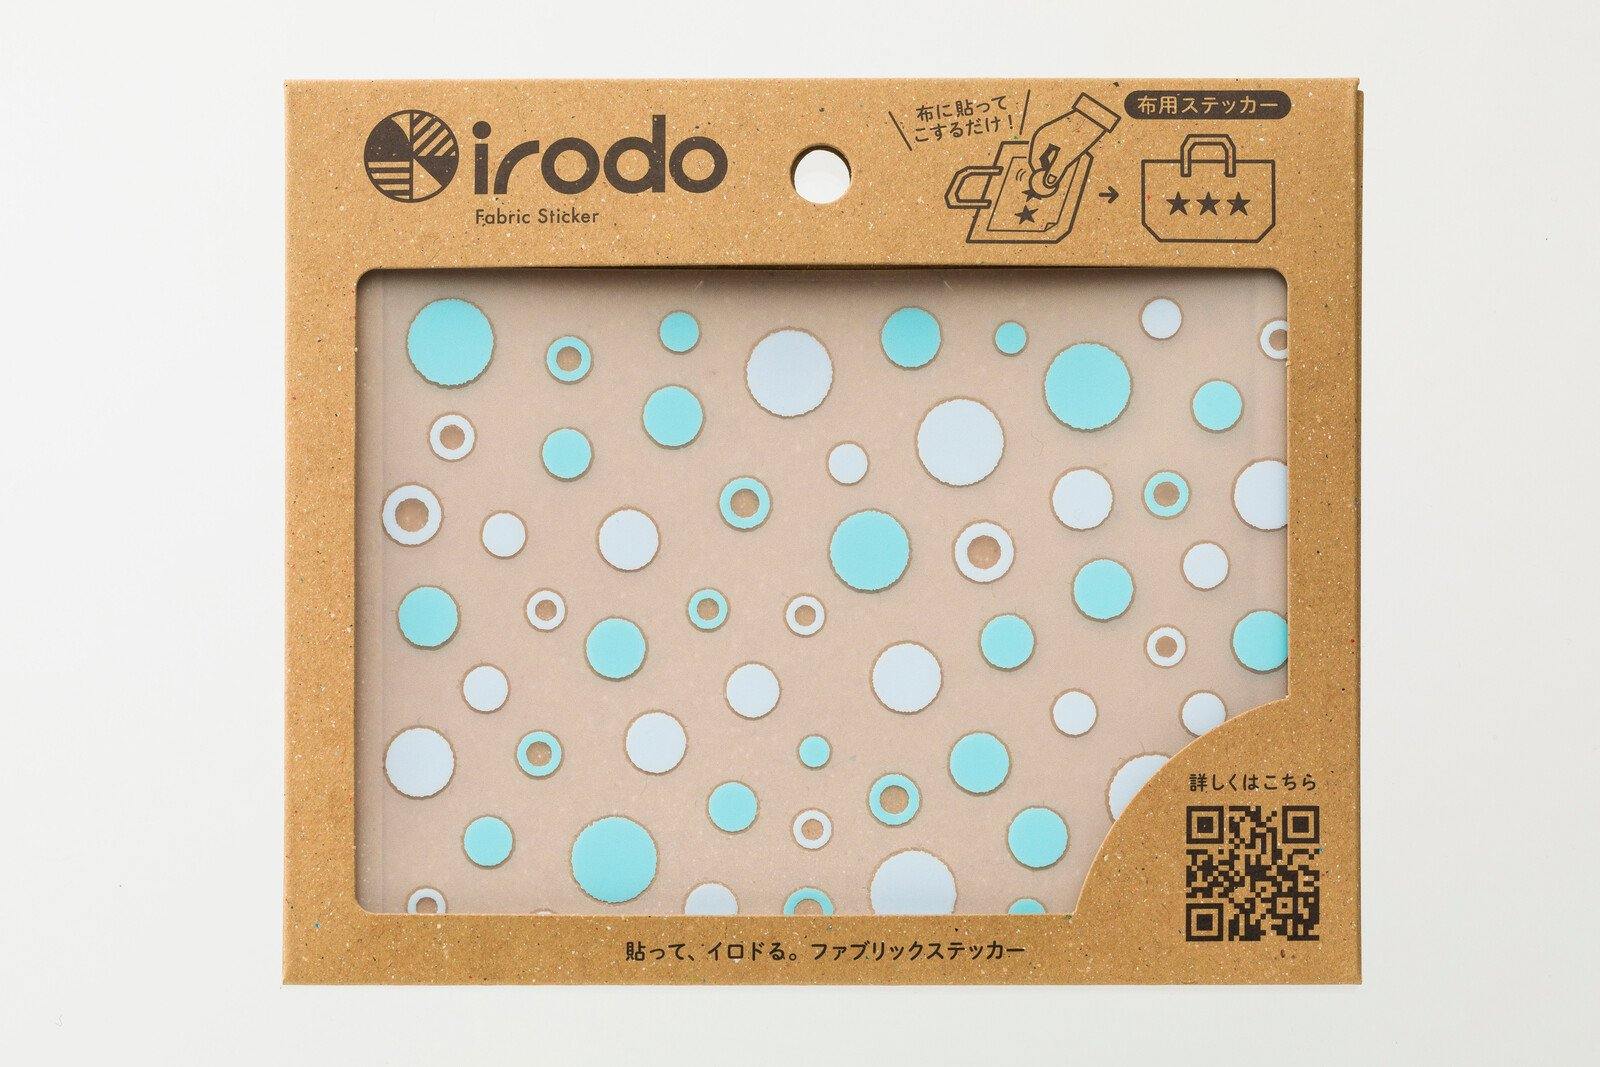 Irodo Fabric Decorating Transfer Sticker - Shower Dots Light Blue & Sky | papermindstationery.com